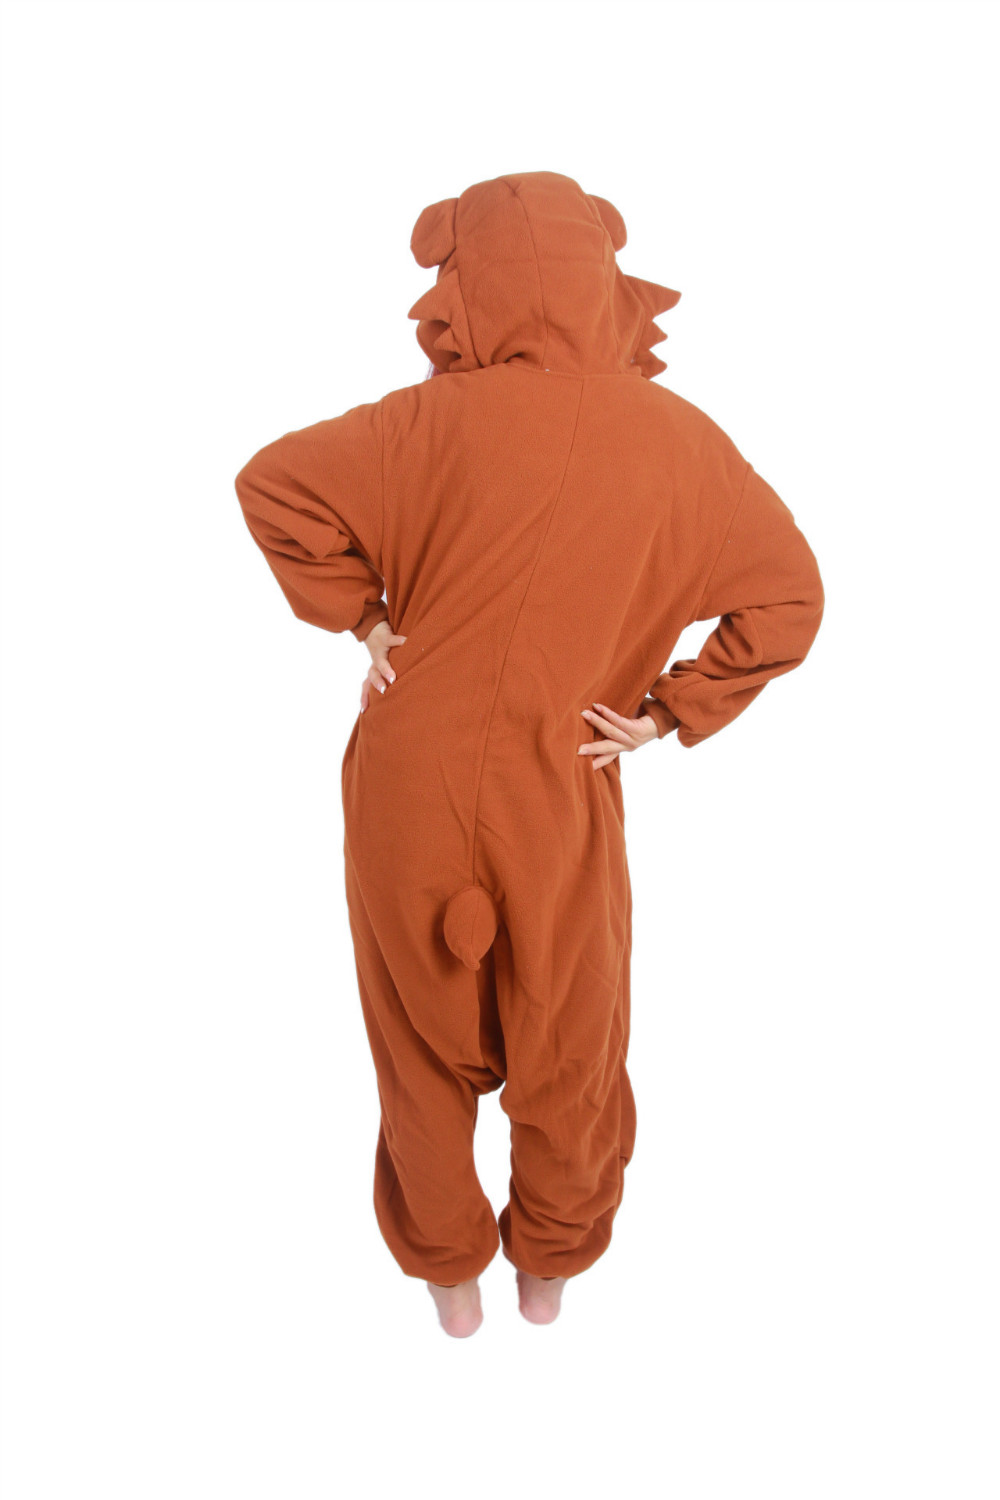 着ぐるみ新成人 Pijamas 動物 Sleepsuit パジャマコスプレ衣装 Pedo パジャマワンピースアダルトブラウンパジャマジャンプスーツロンパース パジャマワンピースアダルト パジャマジャンプスーツコスプレ衣装 Aliexpress